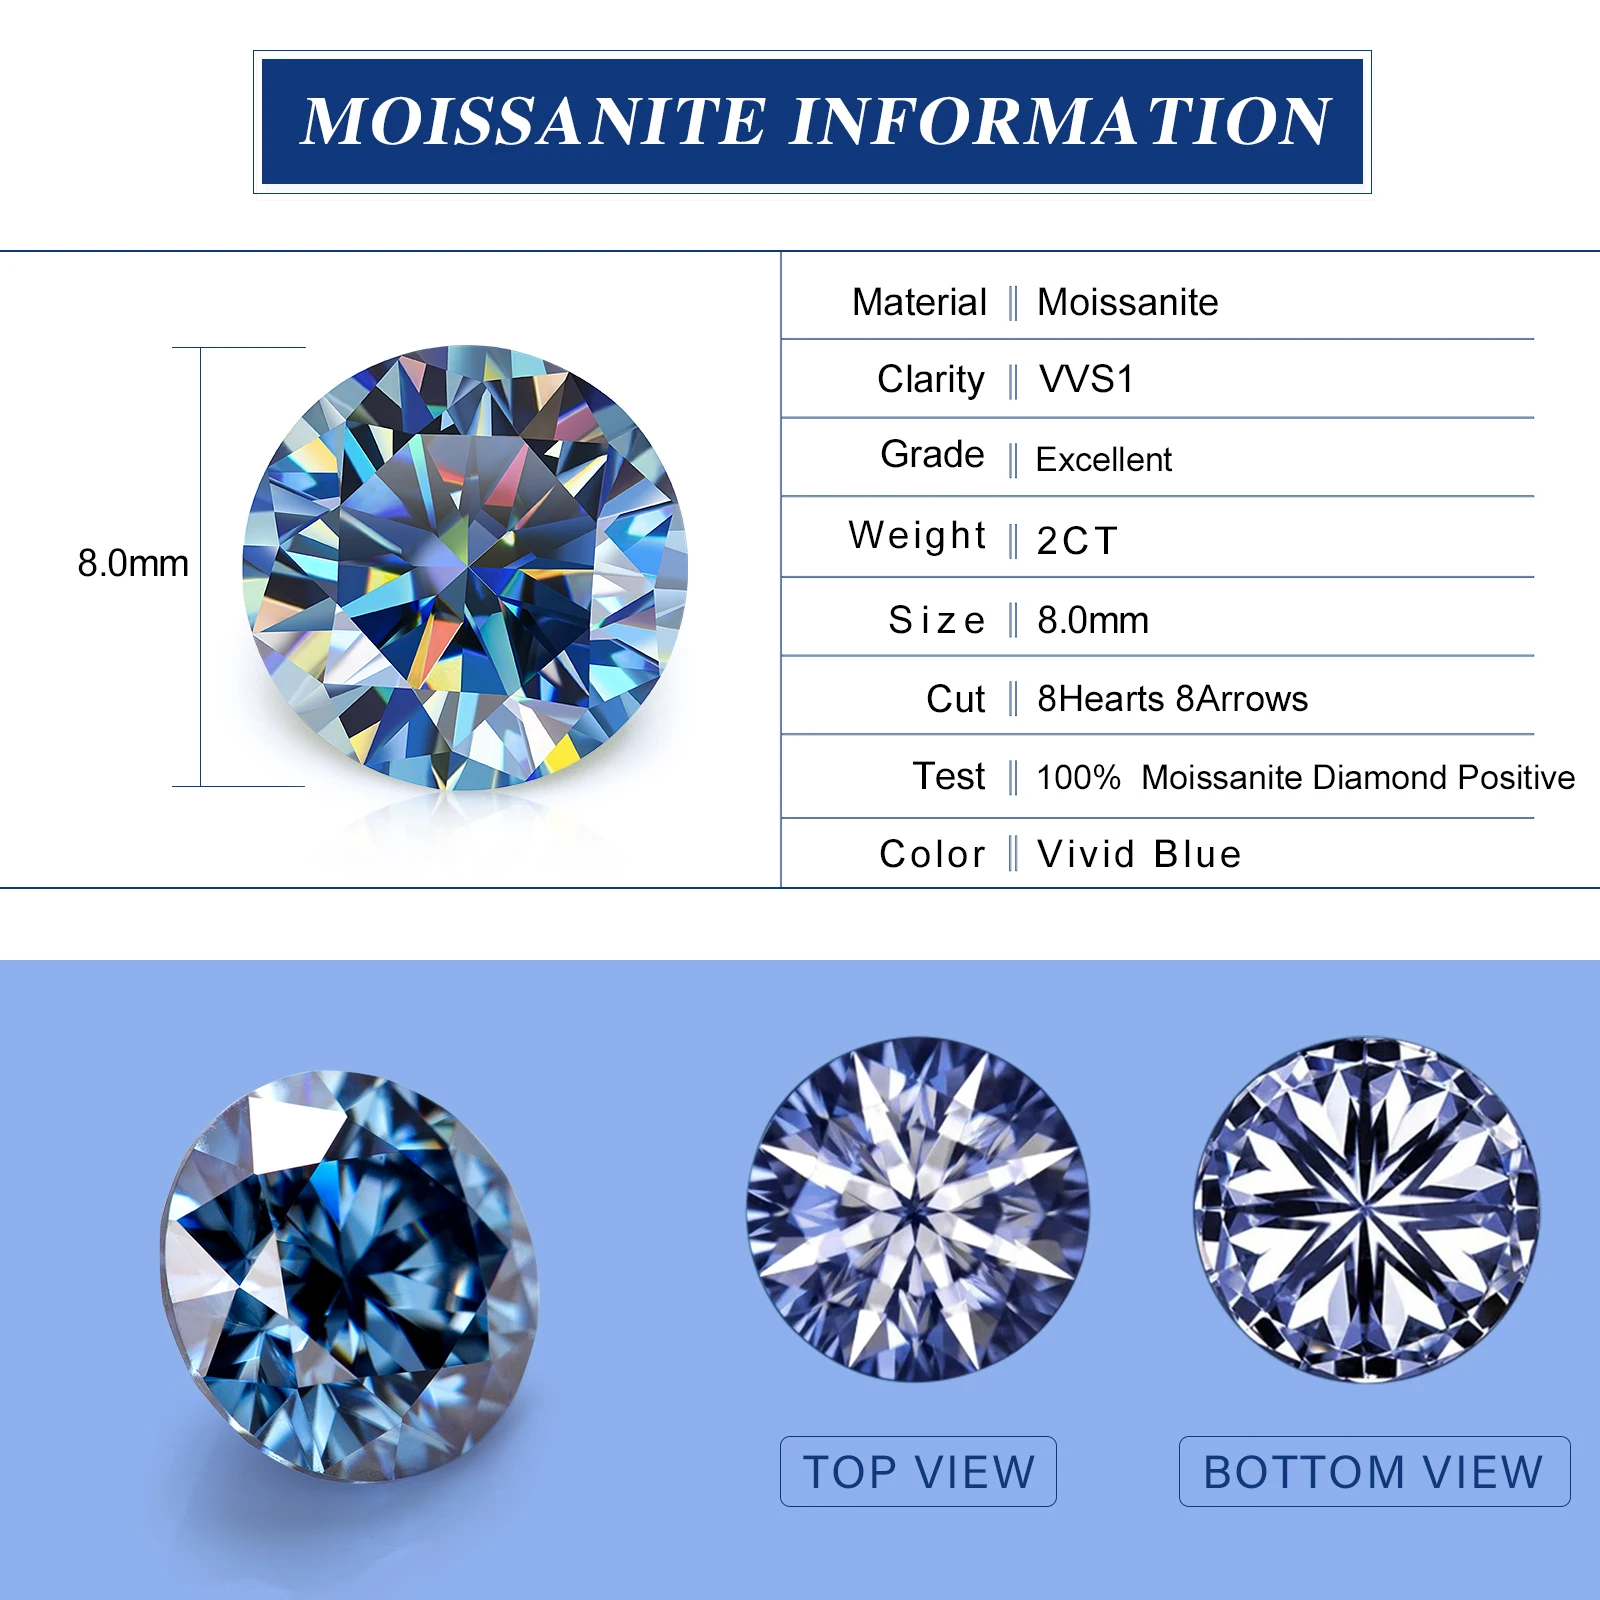 

PTX Holycome Best Round Shape Moissanite Stone Vivid Blue Color VVS1 Loose Gemstone 8H&8A Excellent Cut Pass Diamond Tester